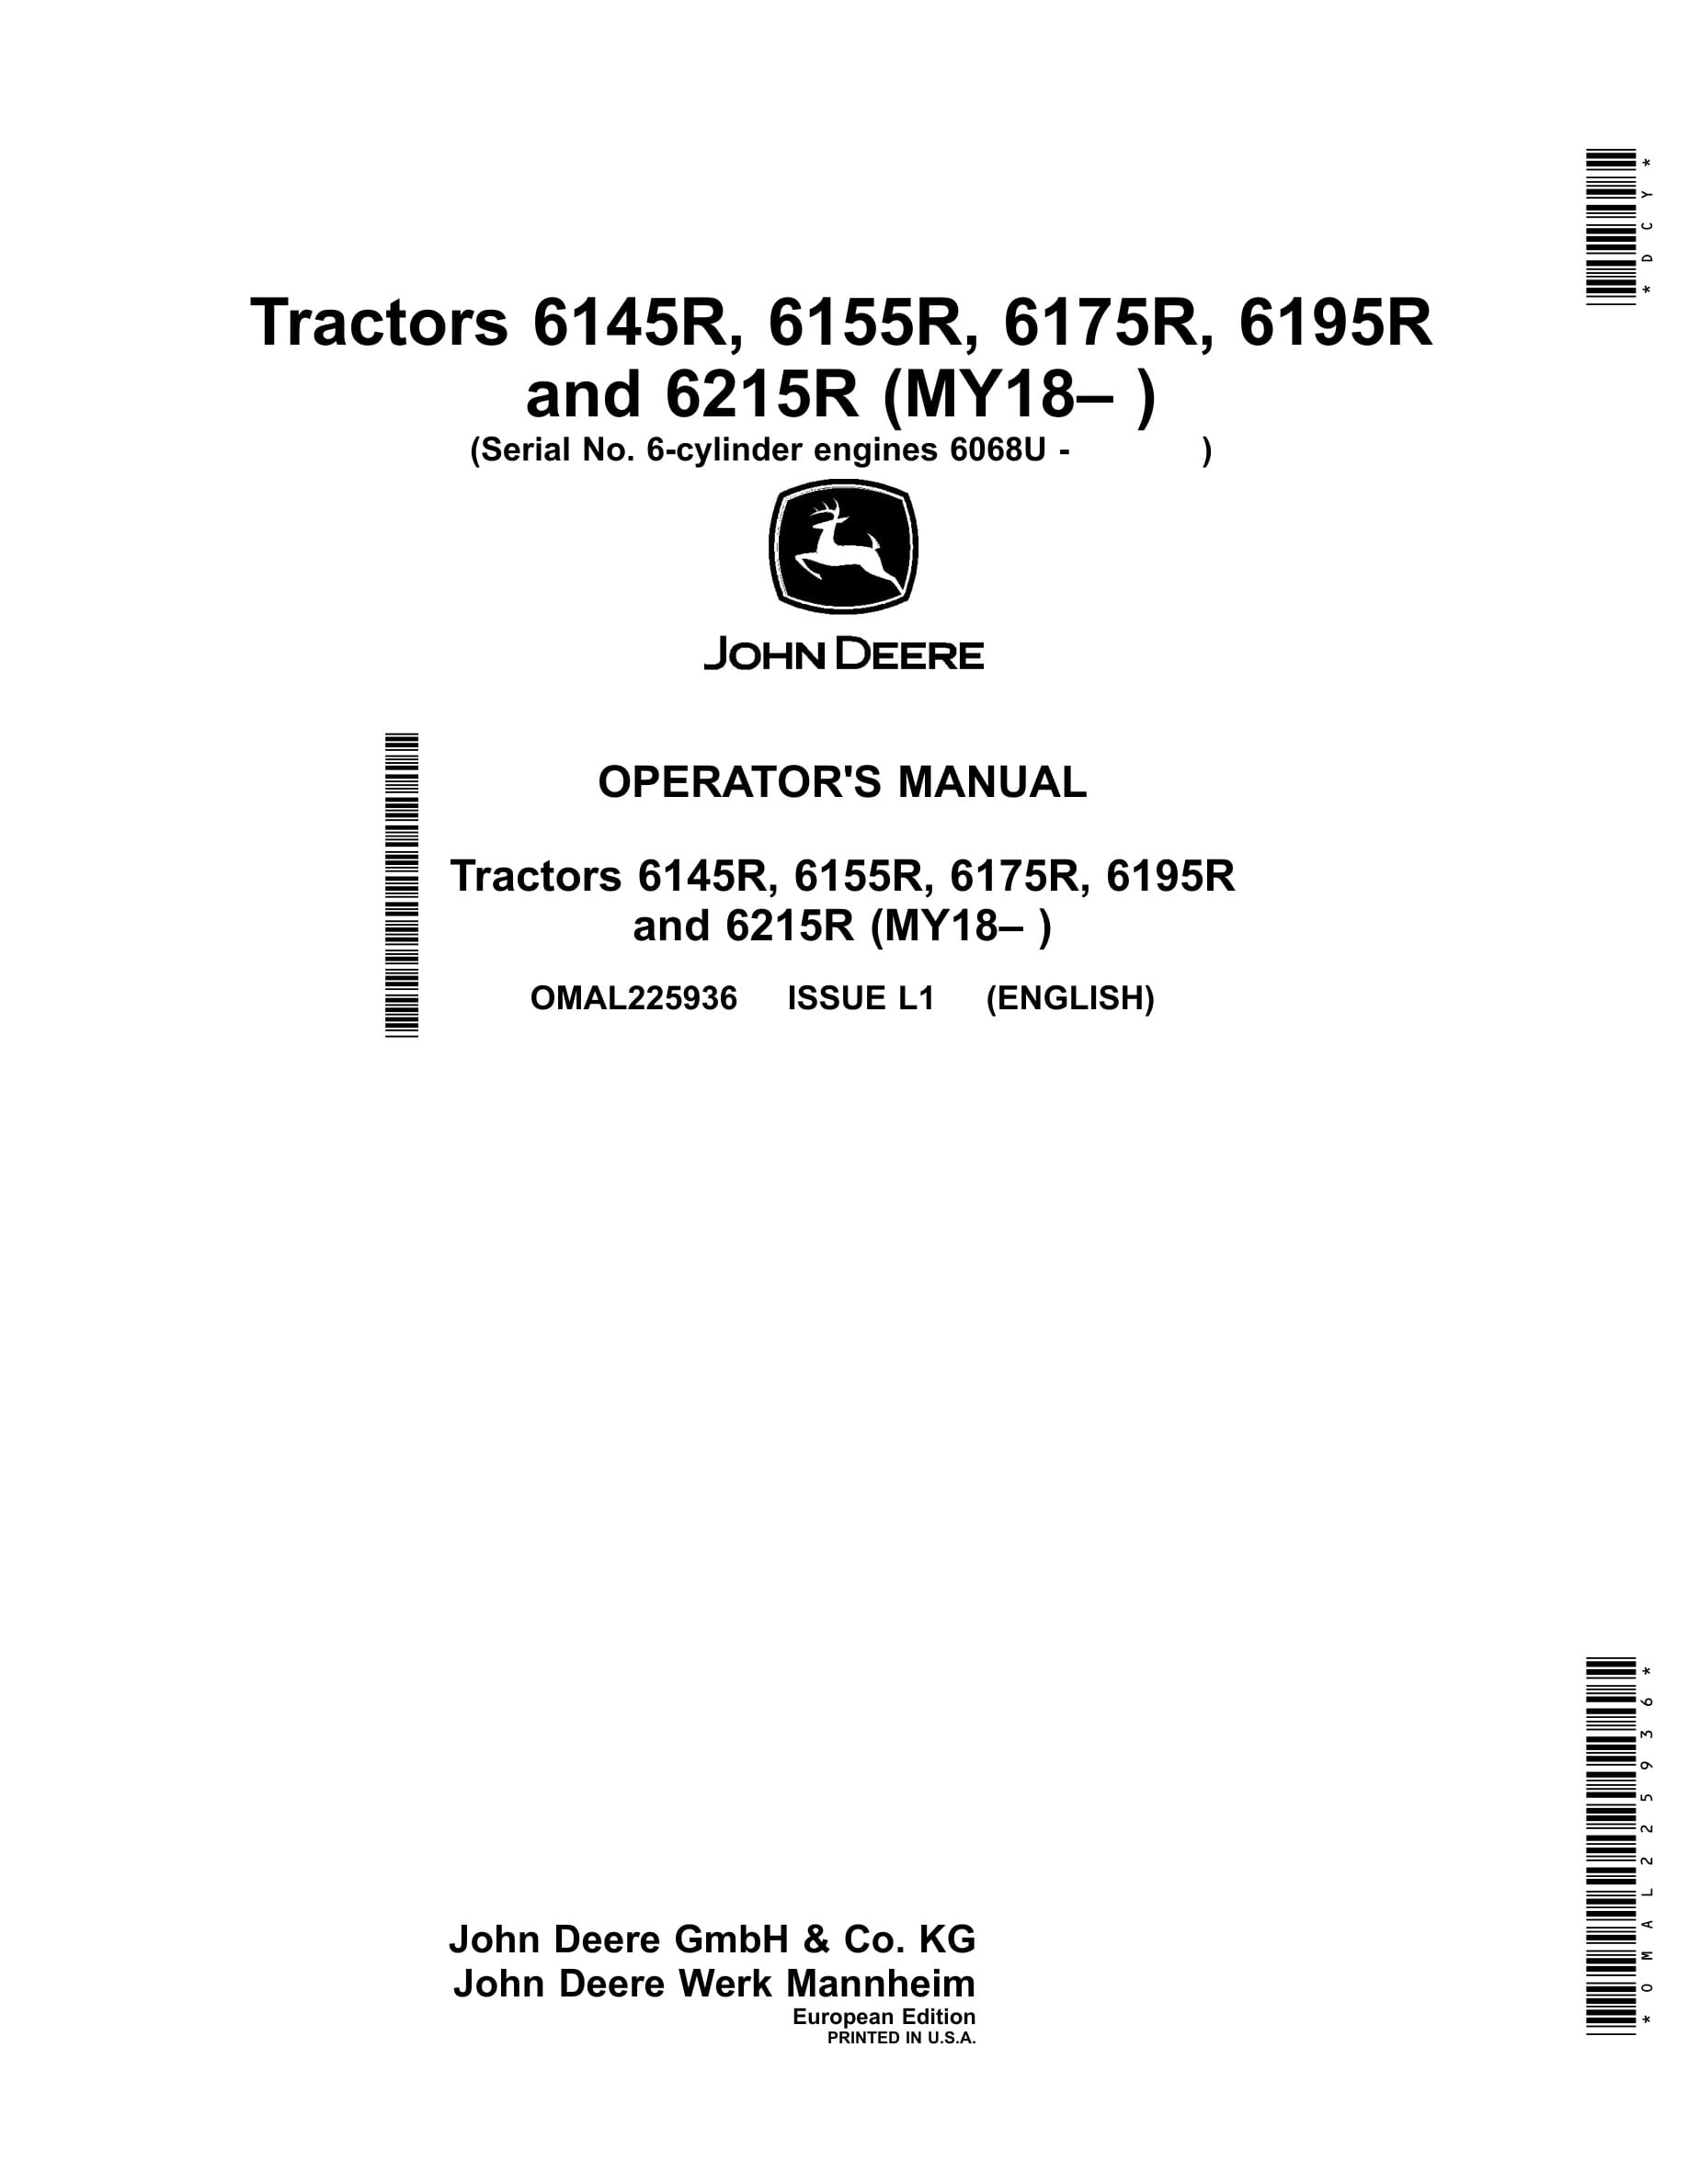 John Deere 6145r, 6155r, 6175r, 6195r 62150r Tractors Operator Manuals OMAL225936-1